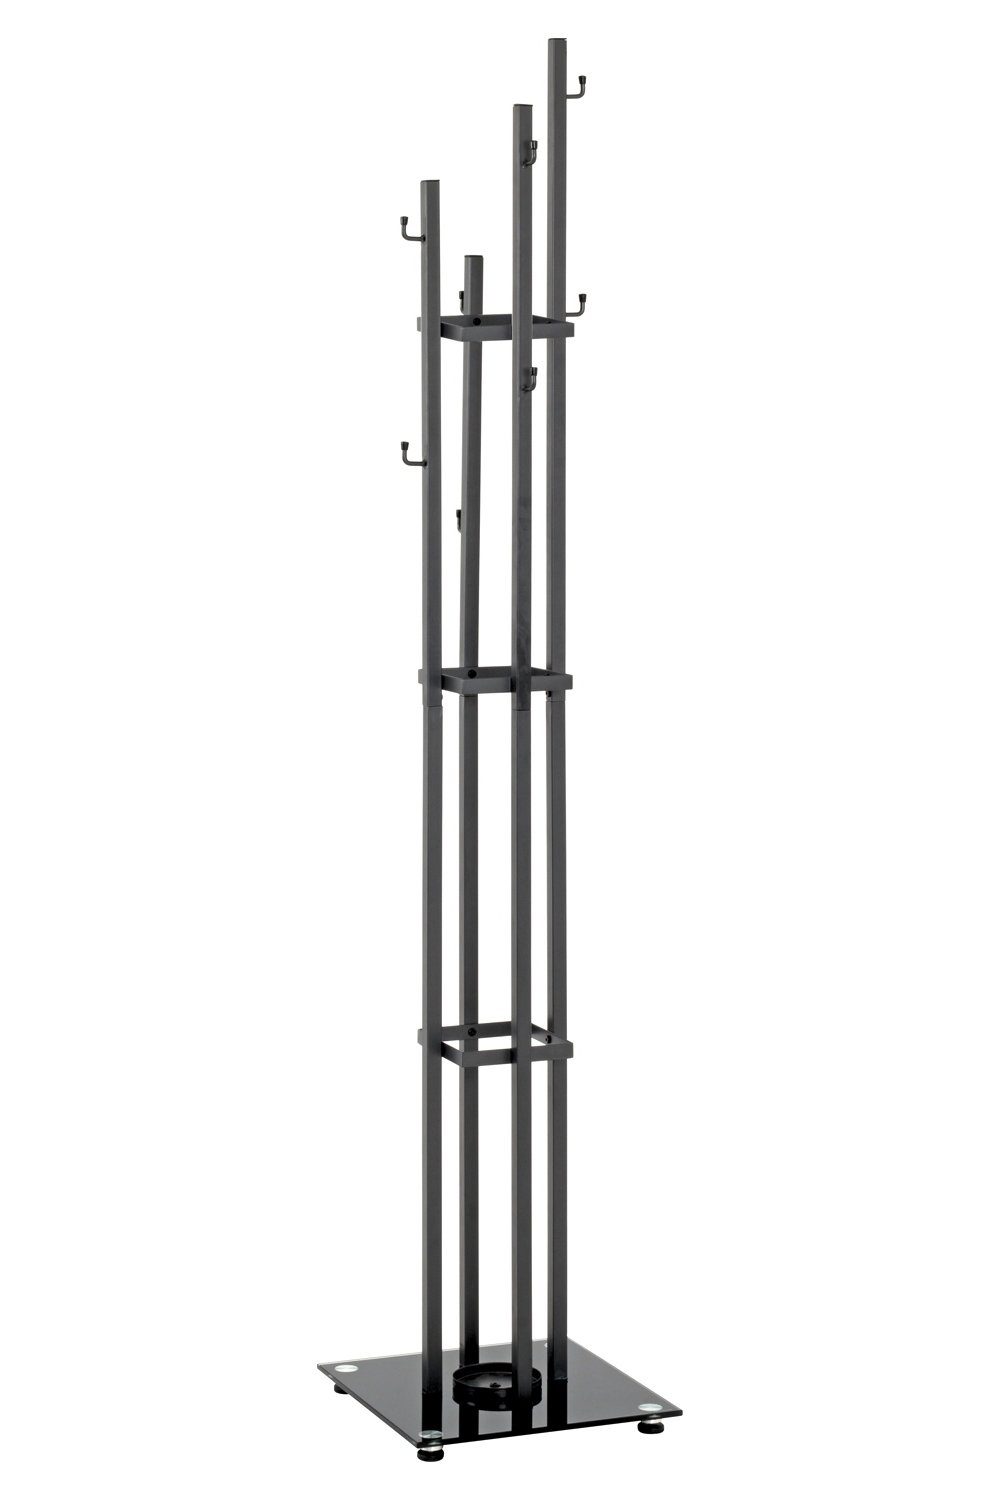 HAKU Garderobenständer LEANDER, B 35 x H 183 cm, Anthrazit, Schwarz, Glas, Stahl, mit Schirmhalter